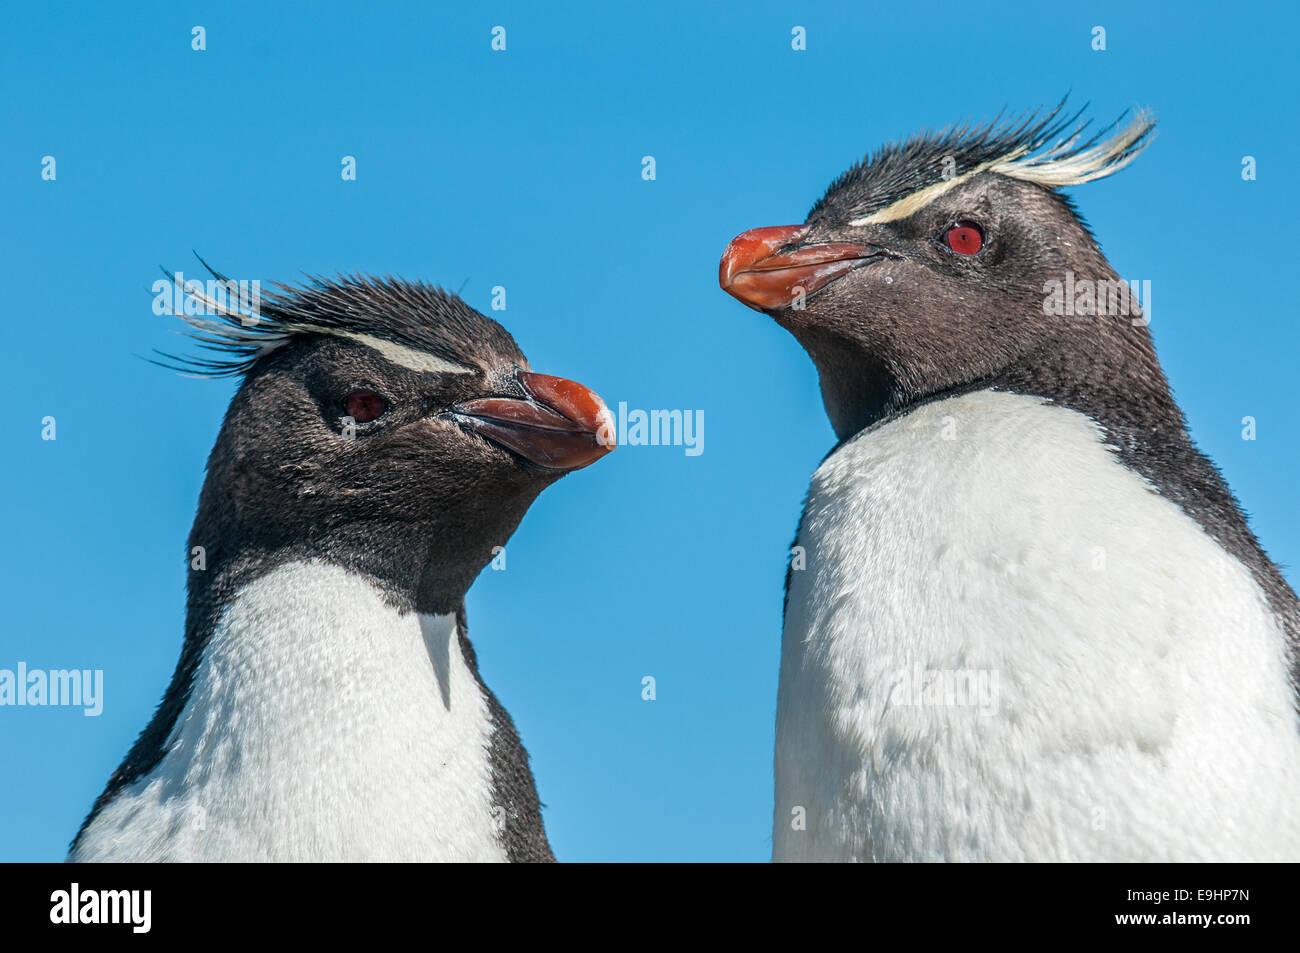 rockhopper penguins Stock Photo